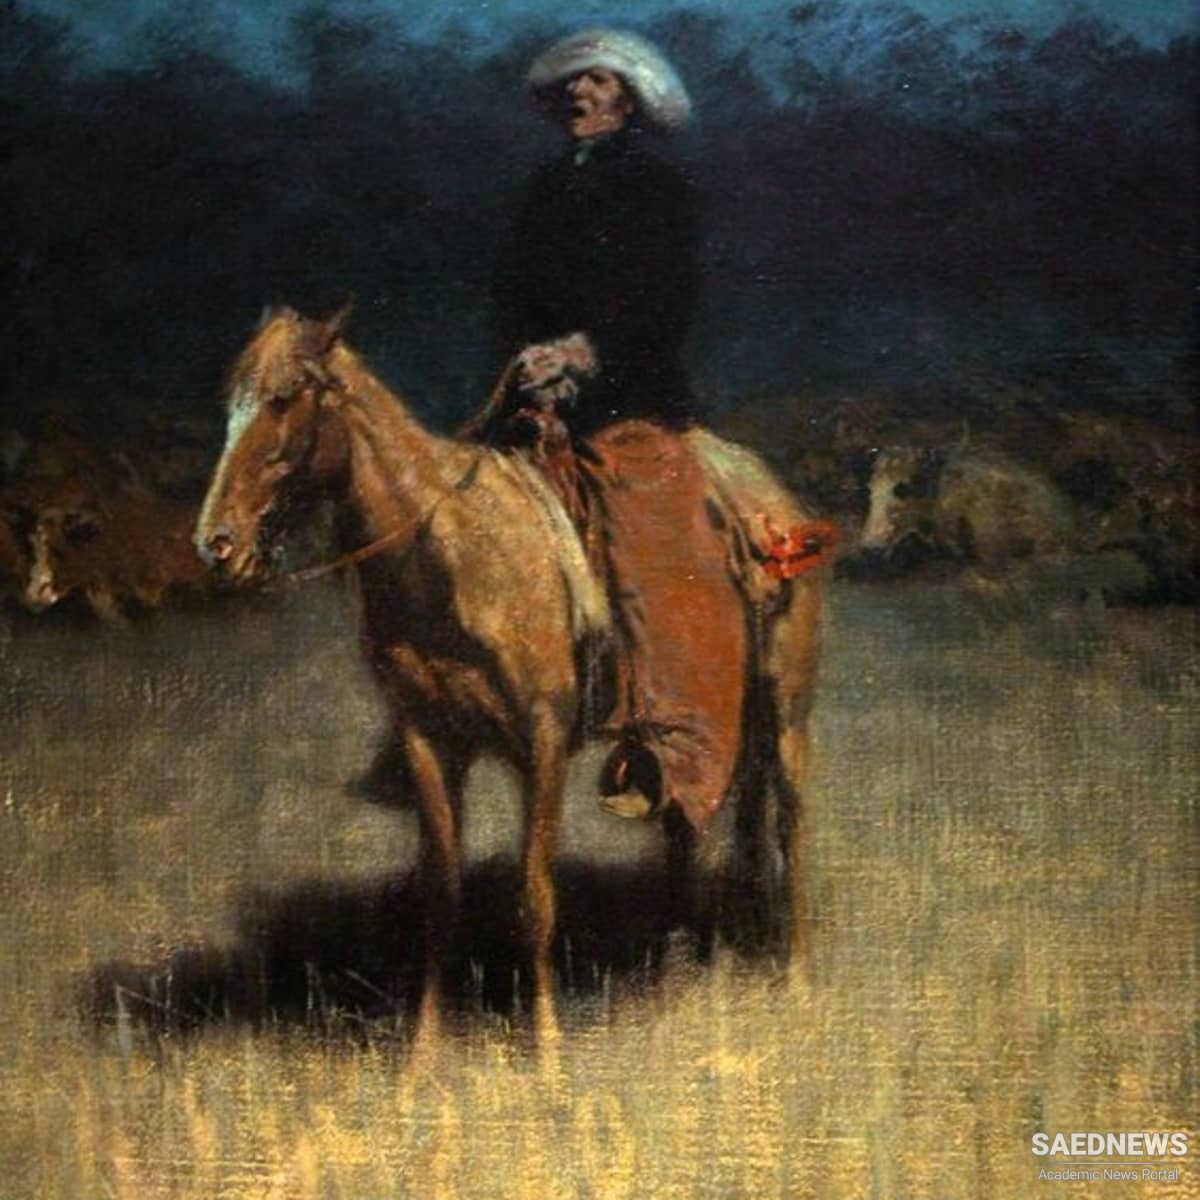 John Lomax and Cowboy Songs